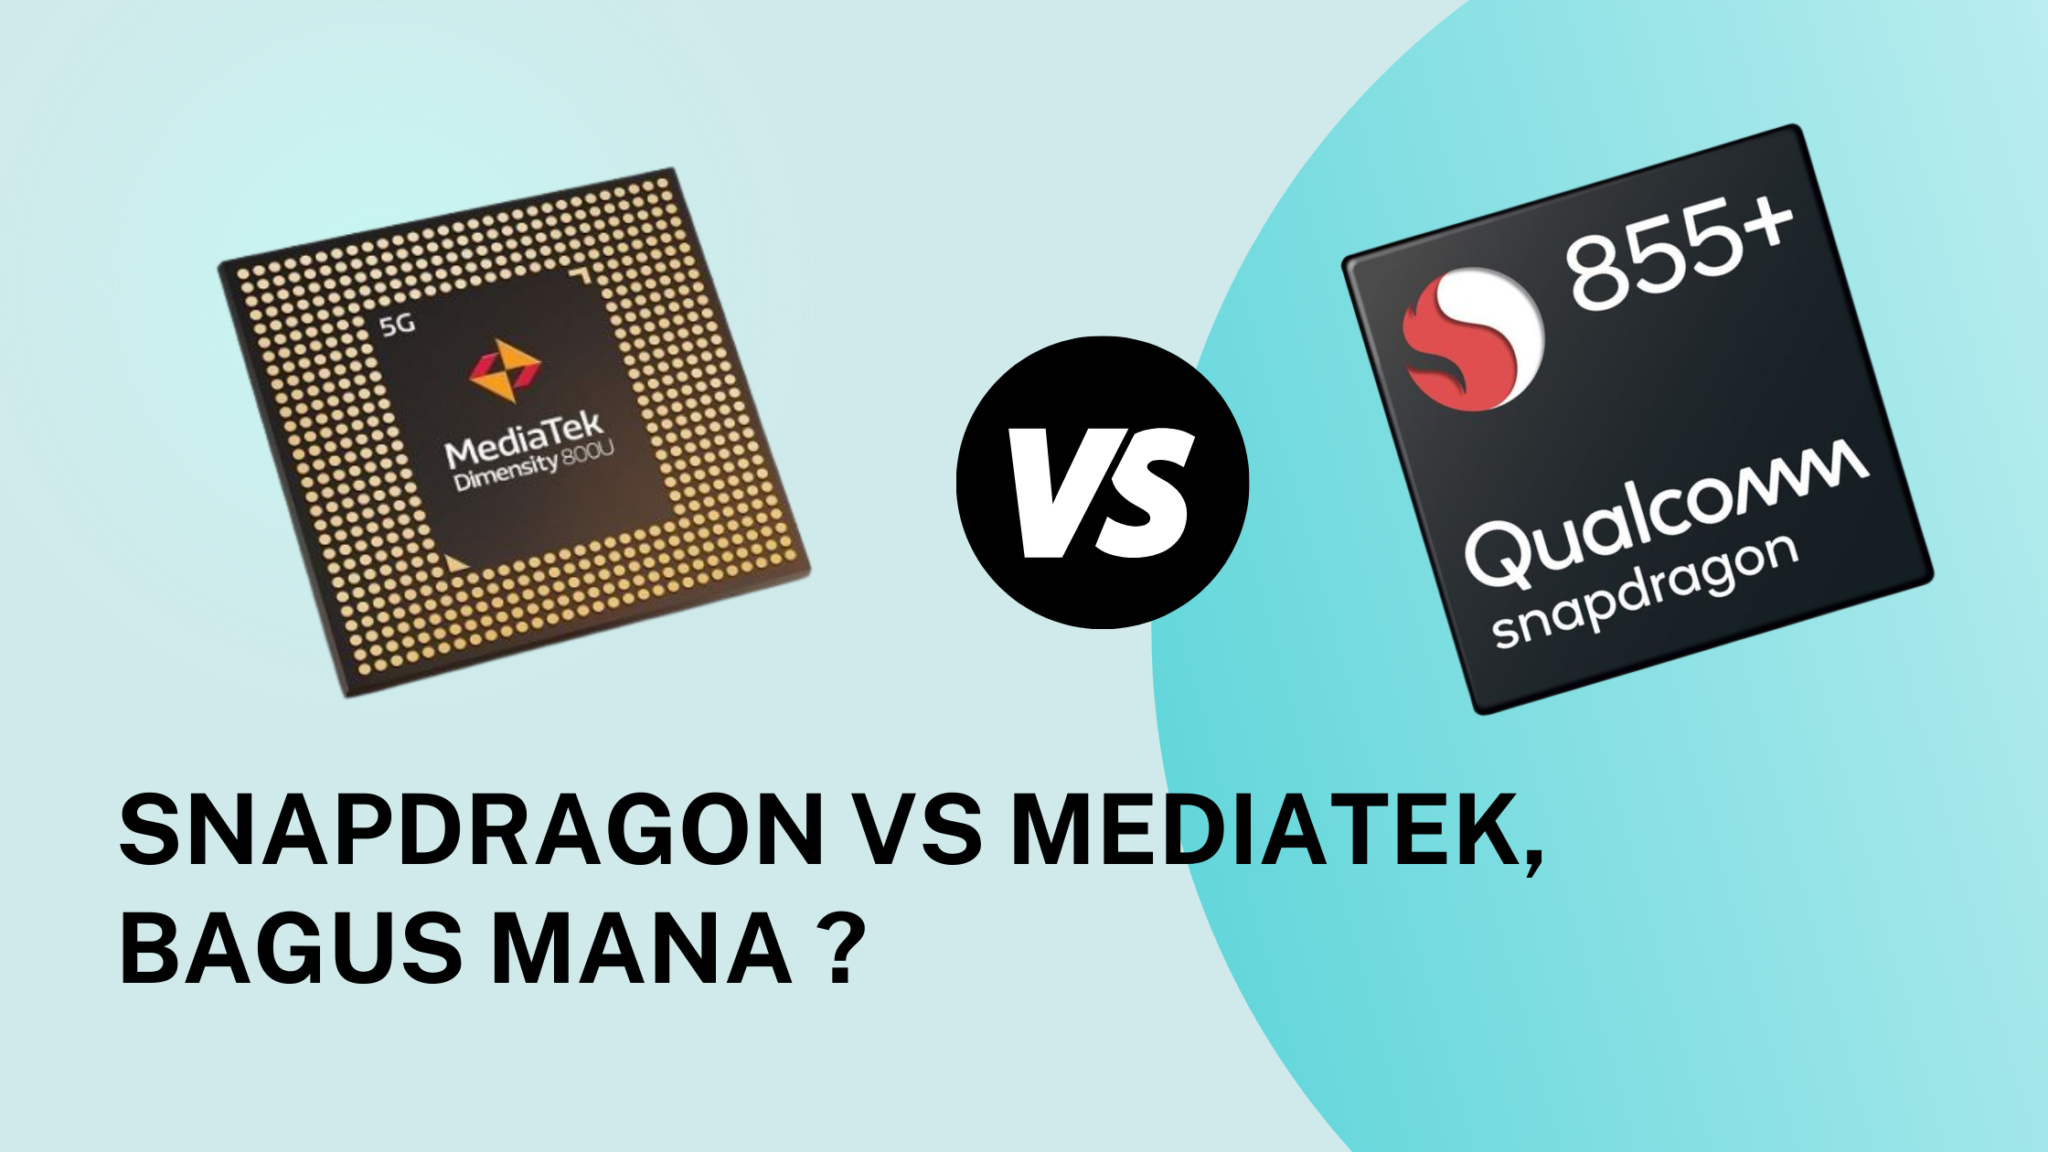 Сравнение процессоров snapdragon и mediatek. MEDIATEK Snapdragon. MEDIATEK или Snapdragon. Helio или Snapdragon. MEDIATEK Helio g99 Ultra против Qualcomm Snapdragon 685.